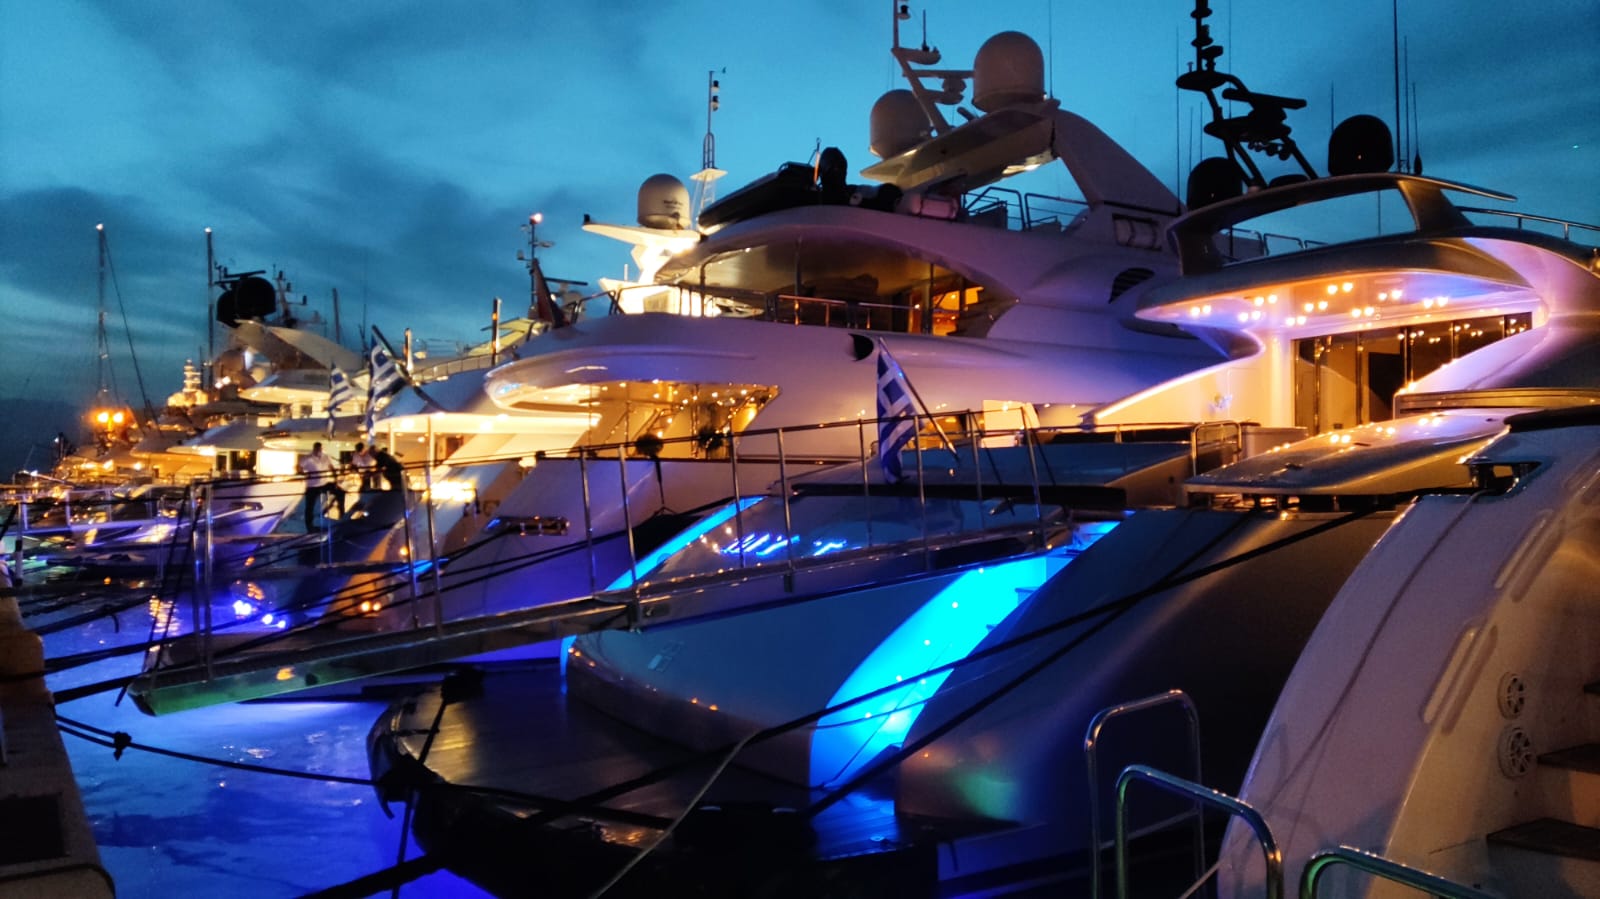 Σκάφη mediterranean yacht show Ναύπλιο προετοιμασίες (21)